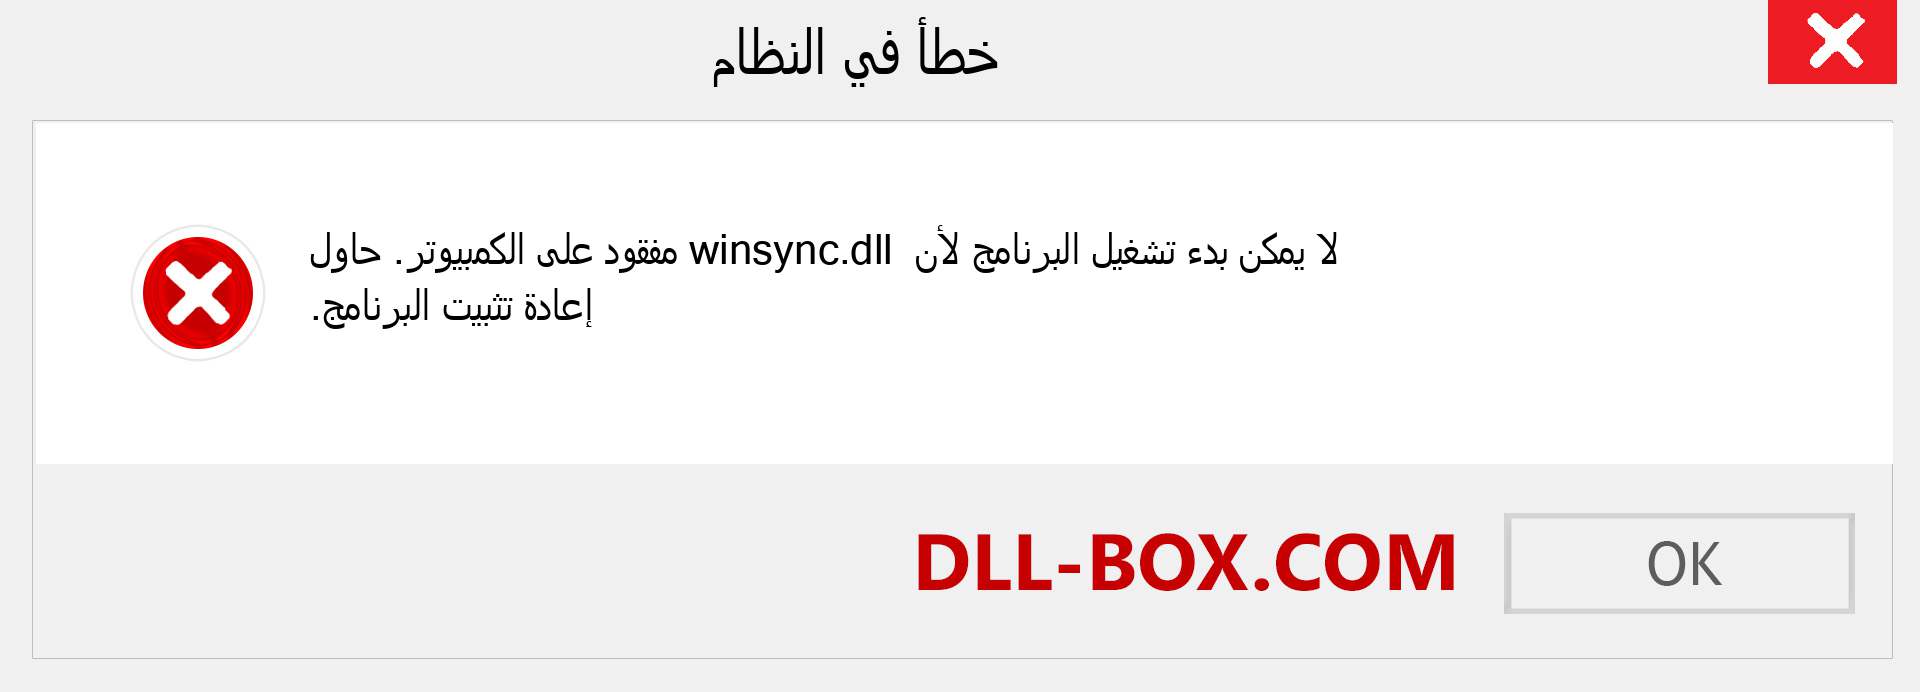 ملف winsync.dll مفقود ؟. التنزيل لنظام التشغيل Windows 7 و 8 و 10 - إصلاح خطأ winsync dll المفقود على Windows والصور والصور